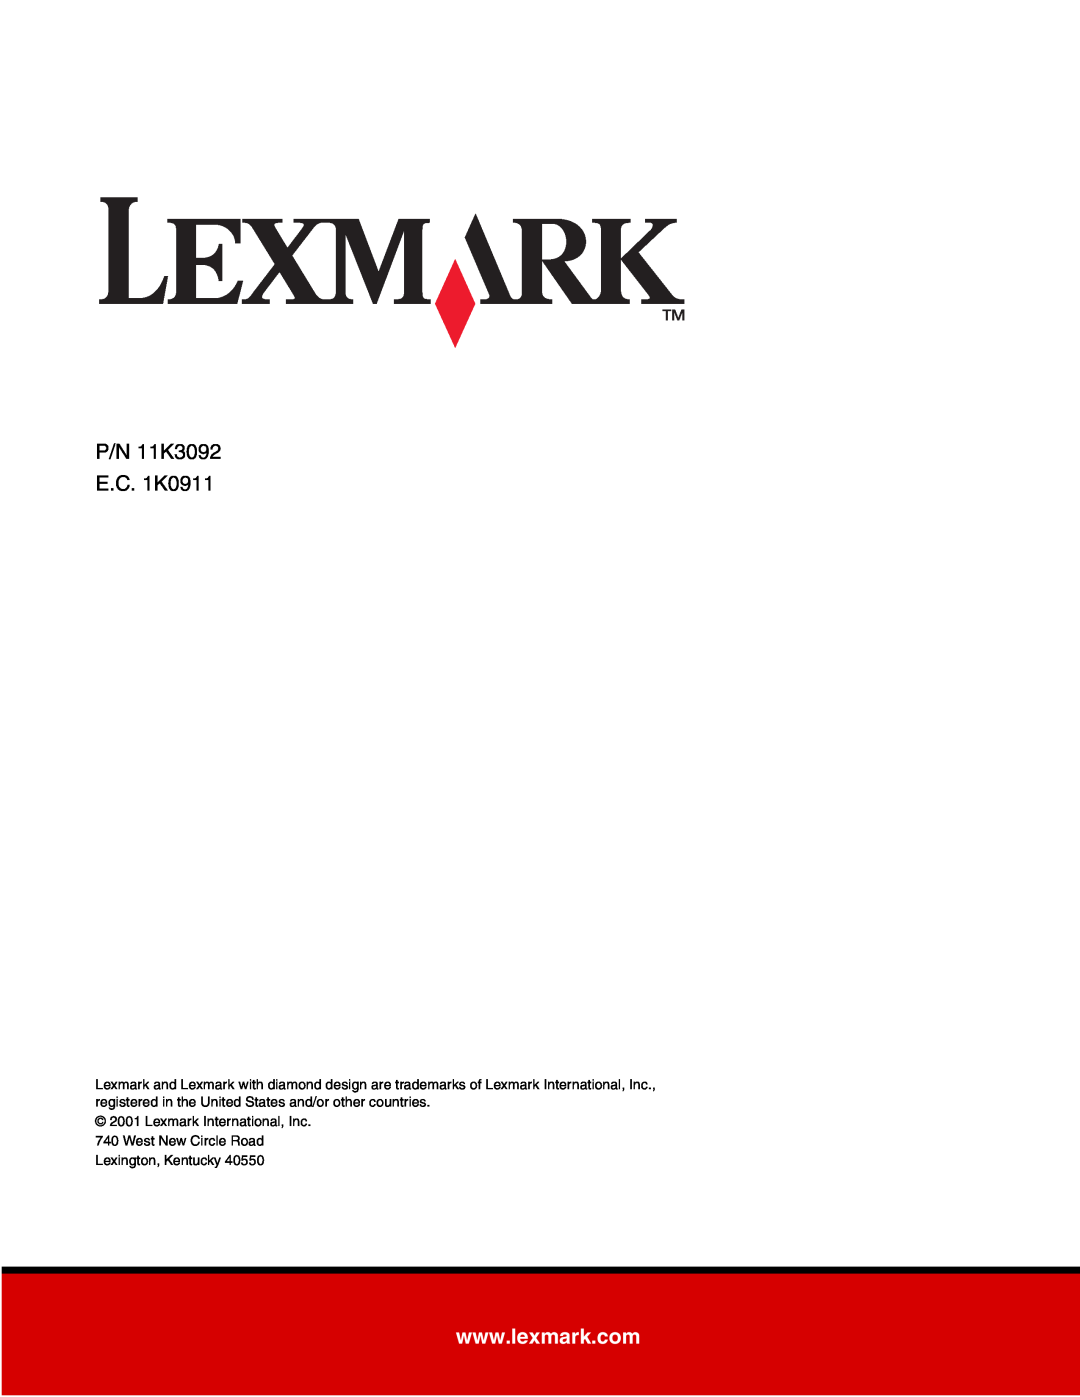 Lexmark T620, T622 P/N 11K3092 E.C. 1K0911, Lexmark International, Inc 740 West New Circle Road, Lexington, Kentucky 